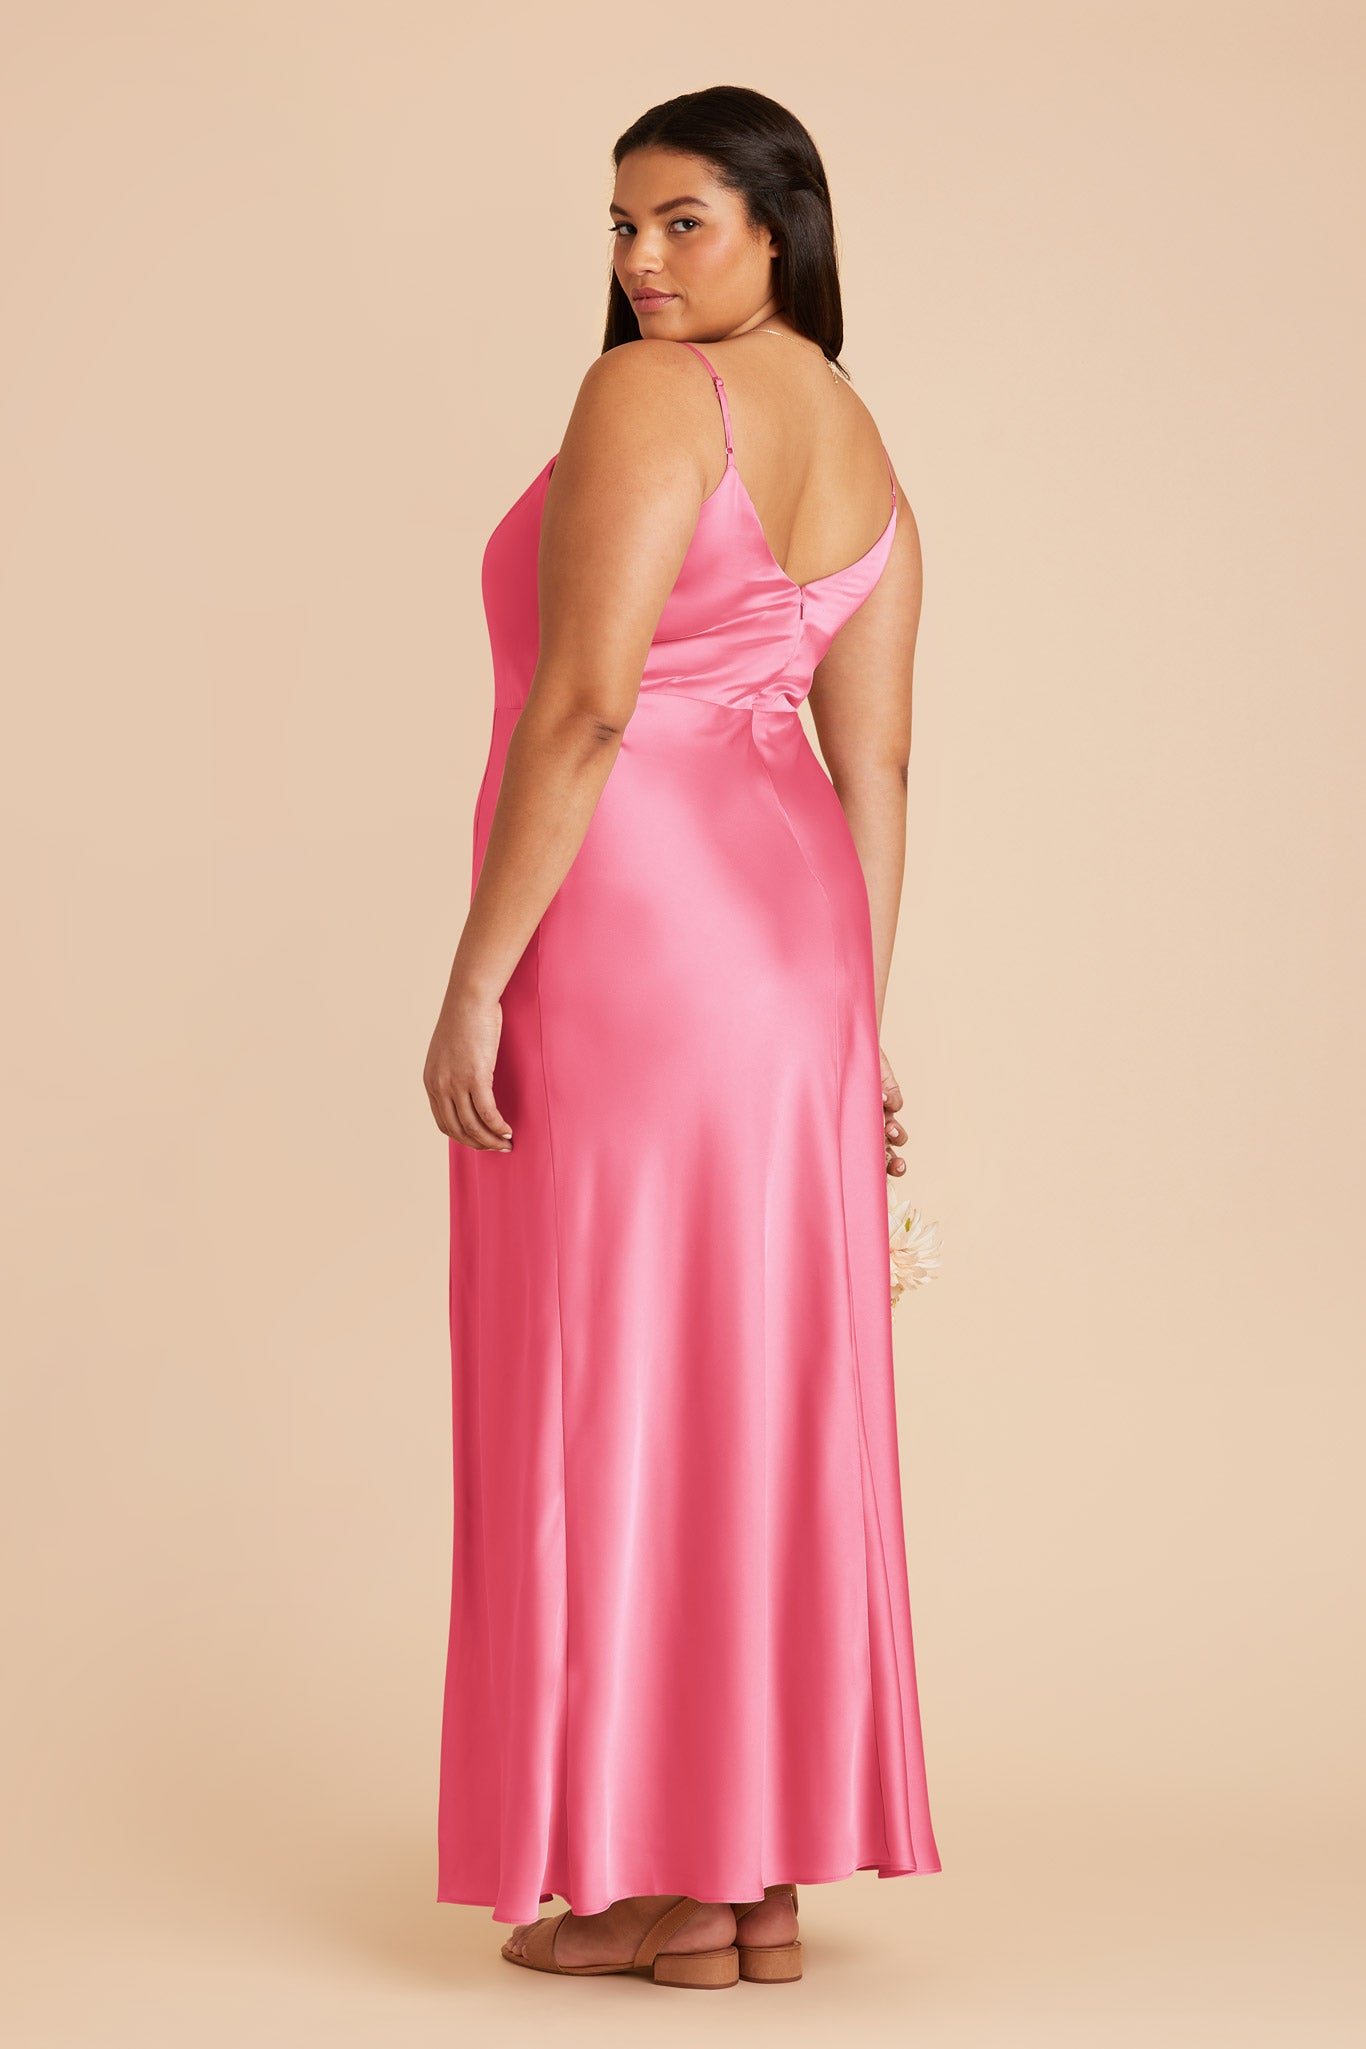 Bon Bon Pink Jay Matte Satin Dress by Birdy Grey